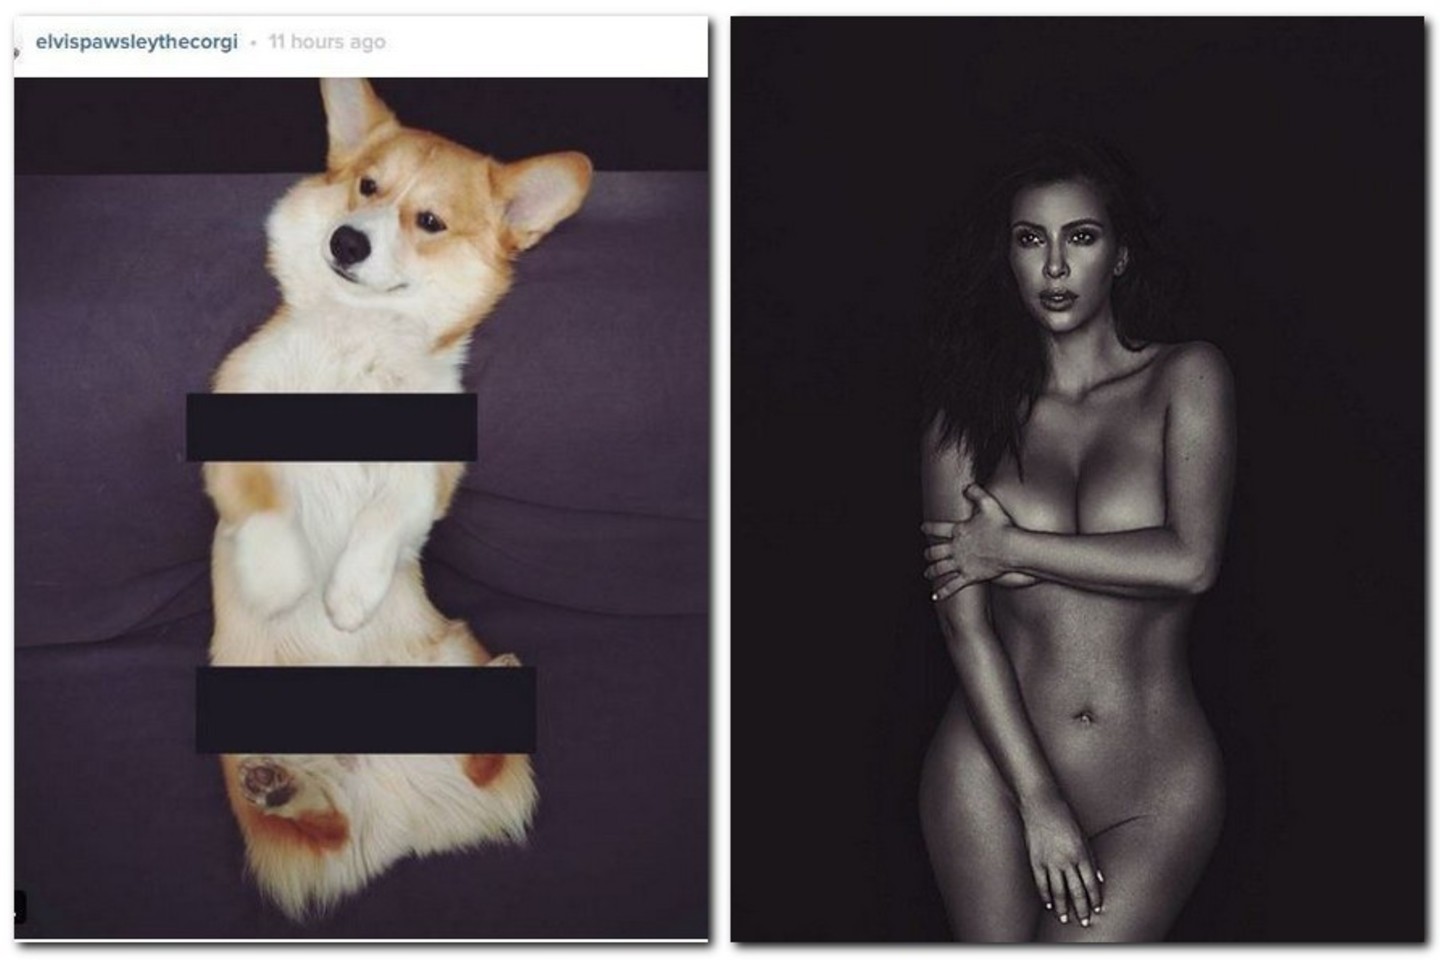 K.Kardashian paviešinta asmenukė tapo internetinių memų parodija.<br>Socialinių tinklų nuotr.